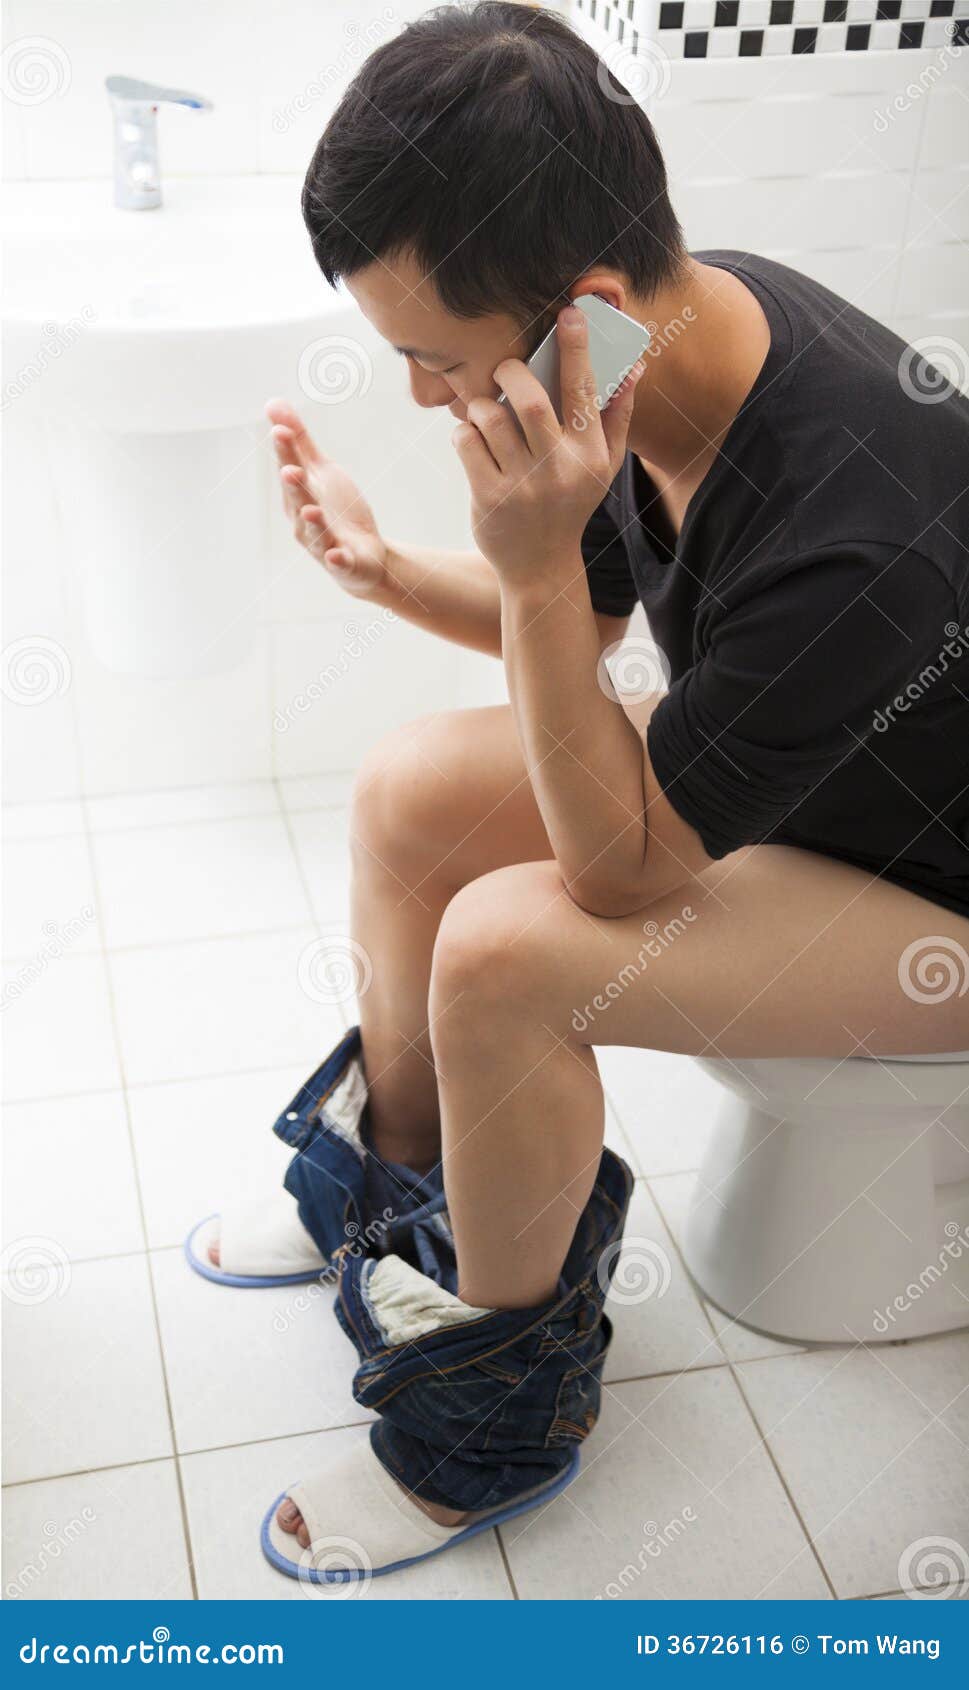 Что в телефоне в туалете делать. Человек на унитазе с телефоном. Мужик на унитазе с телефоном. Человек в туалете с телефоном. Человек сидит на унитазе с телефоном.